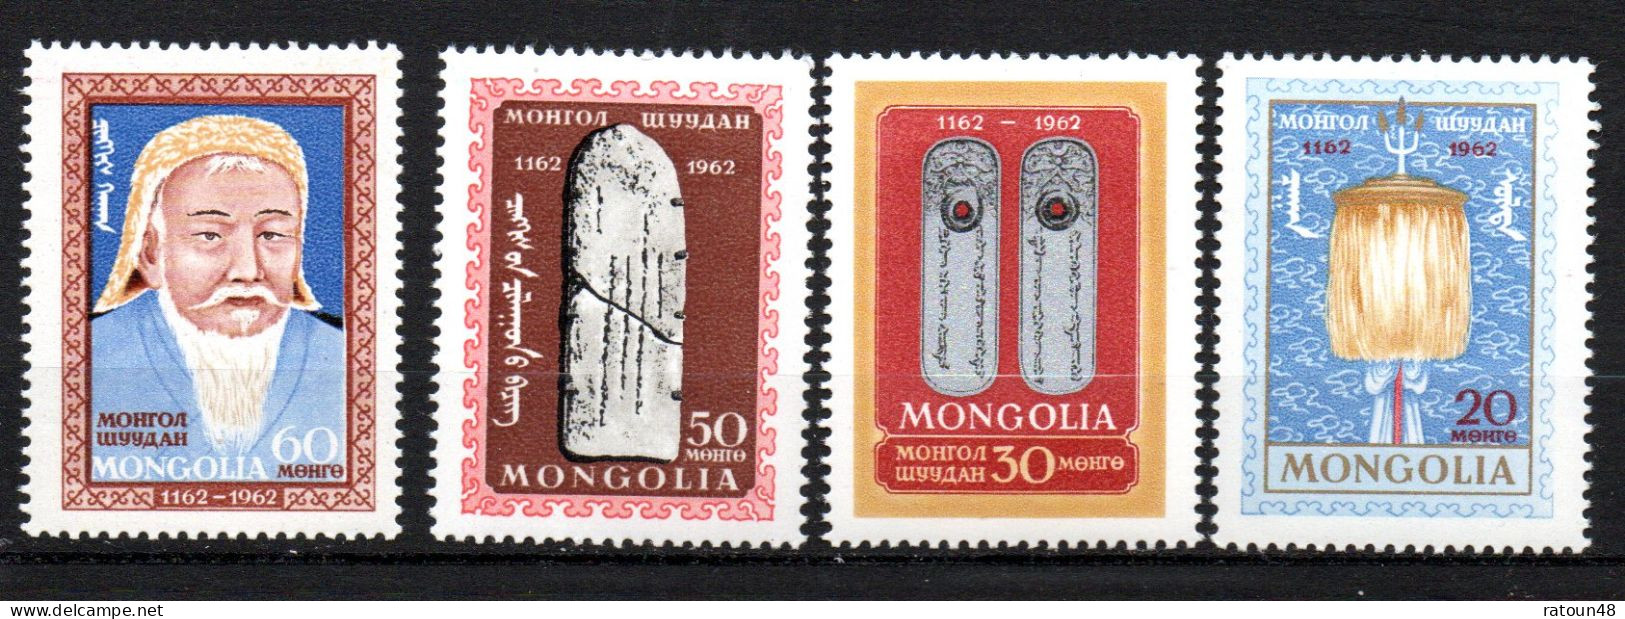 Série Neuve**  Gengis Khan N° 267 à 270 Mongolie - Mongolie